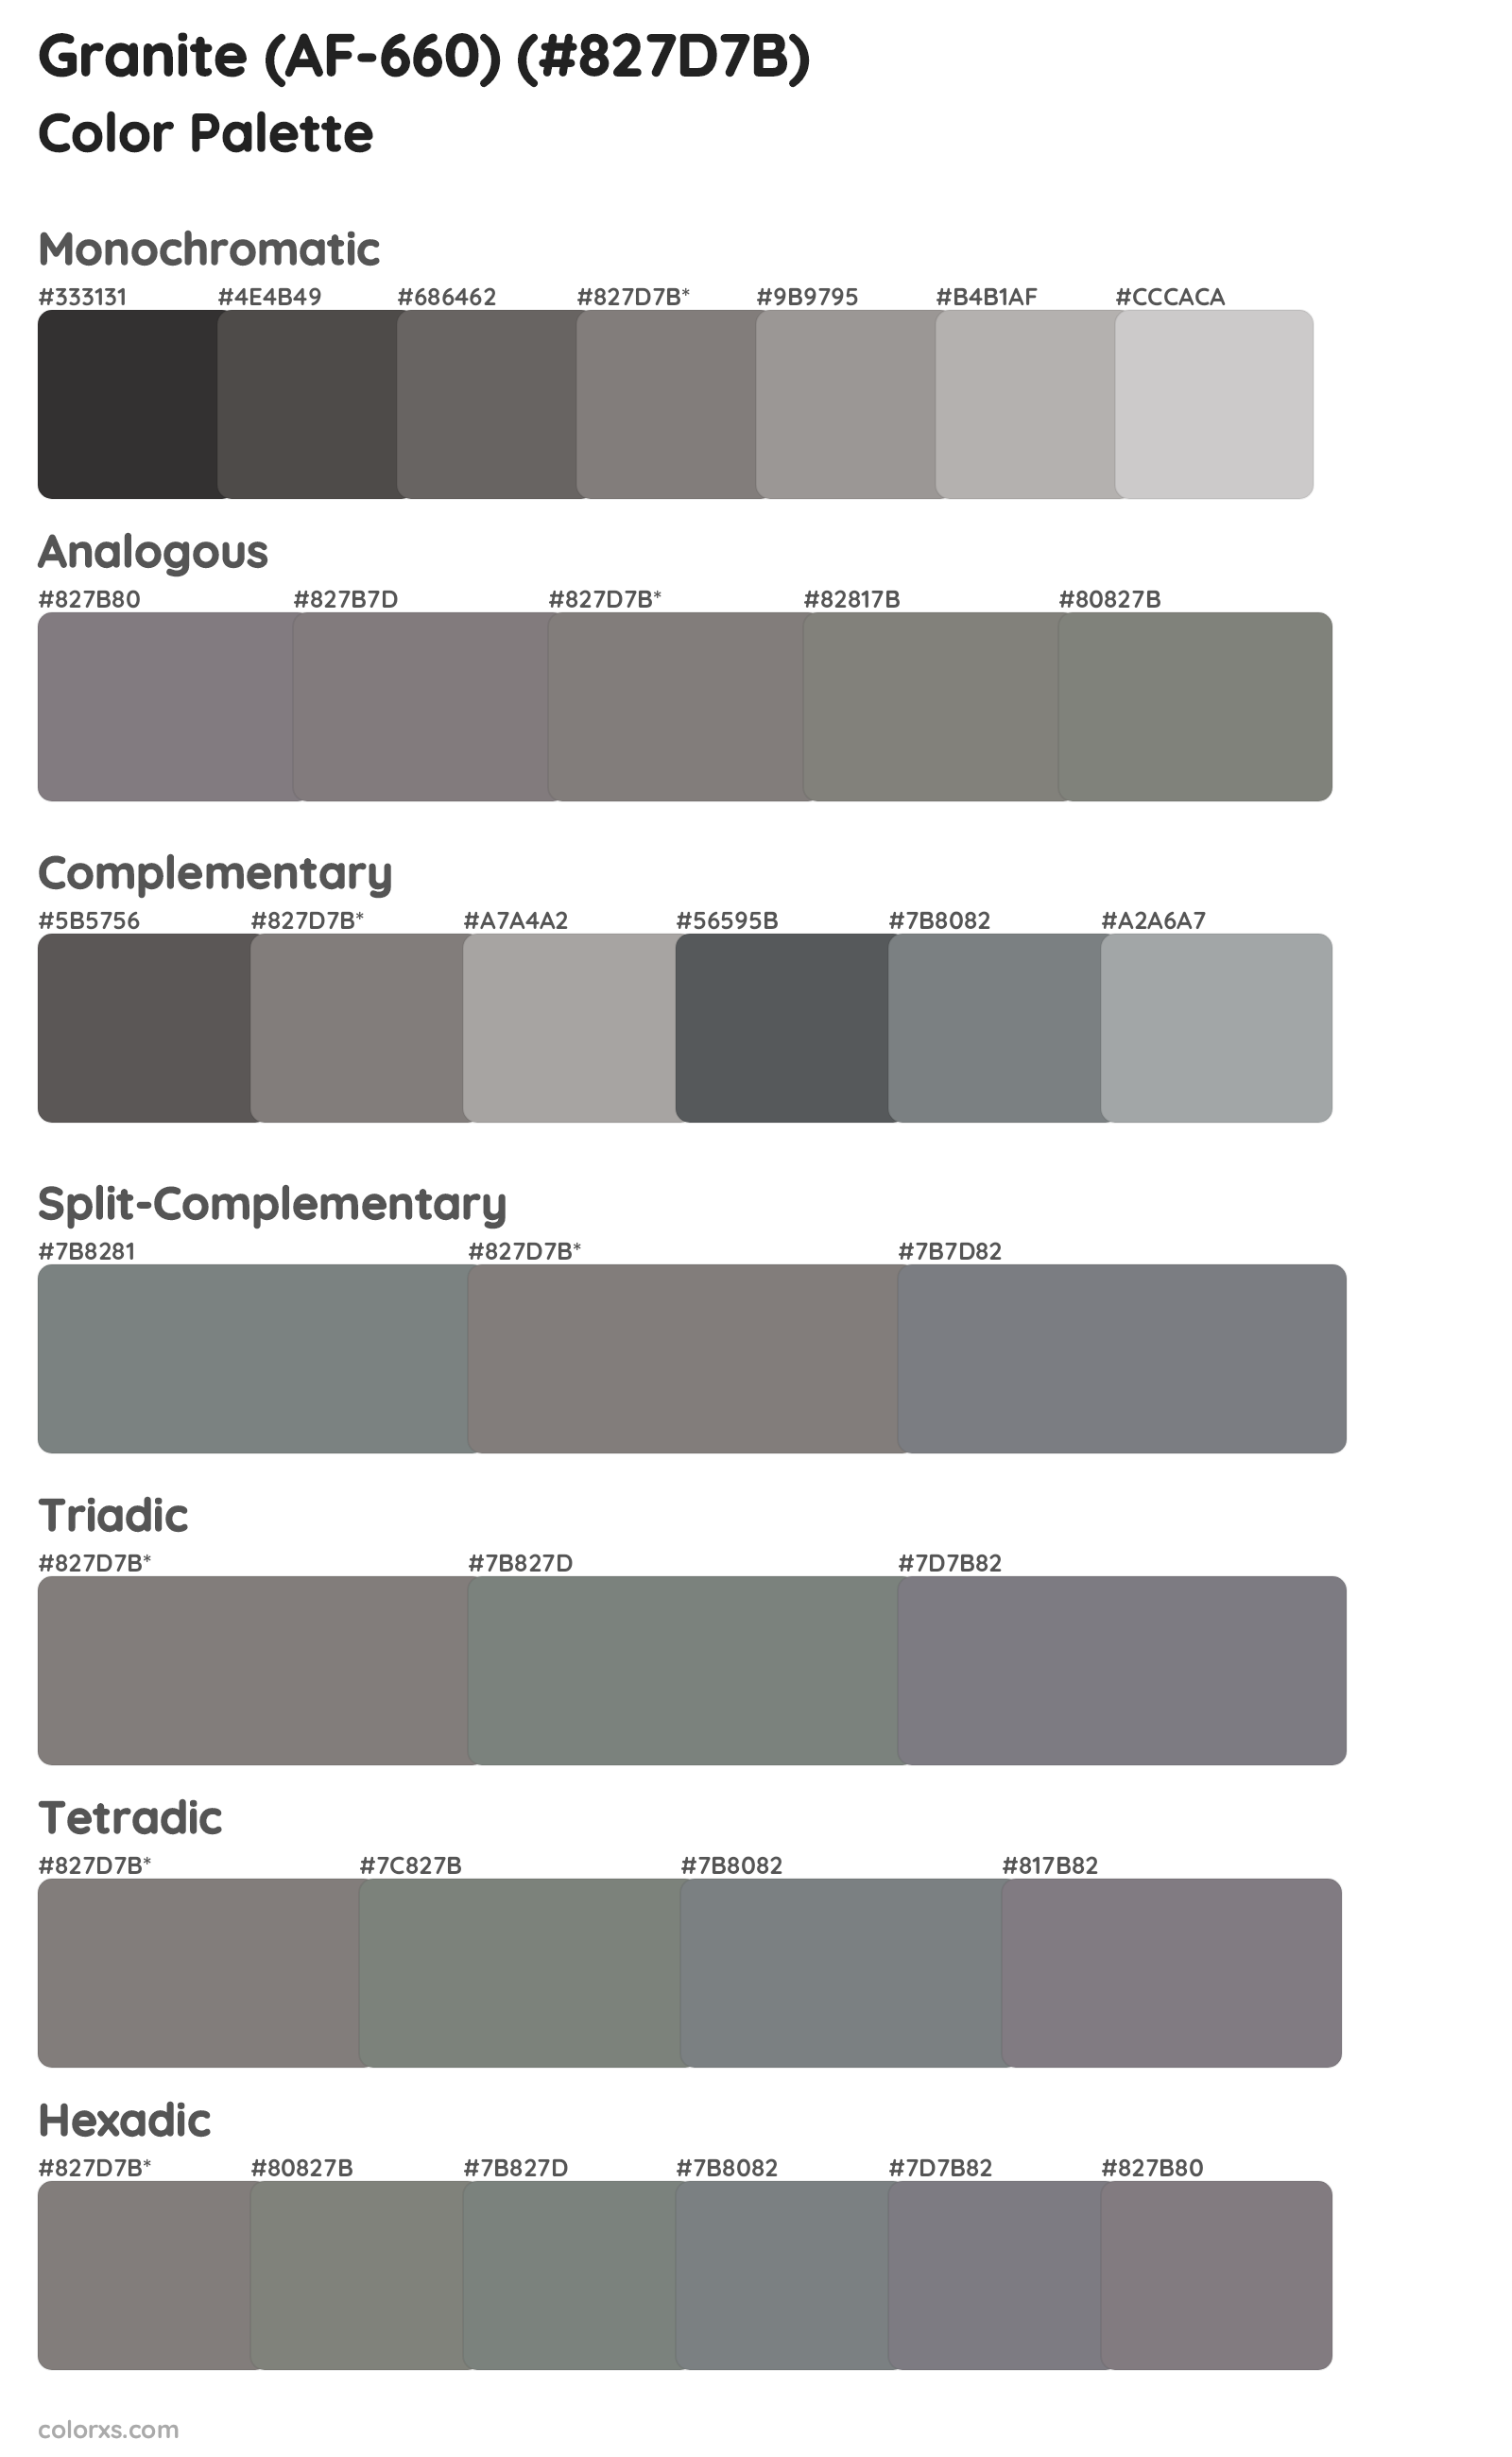 Granite (AF-660) Color Scheme Palettes